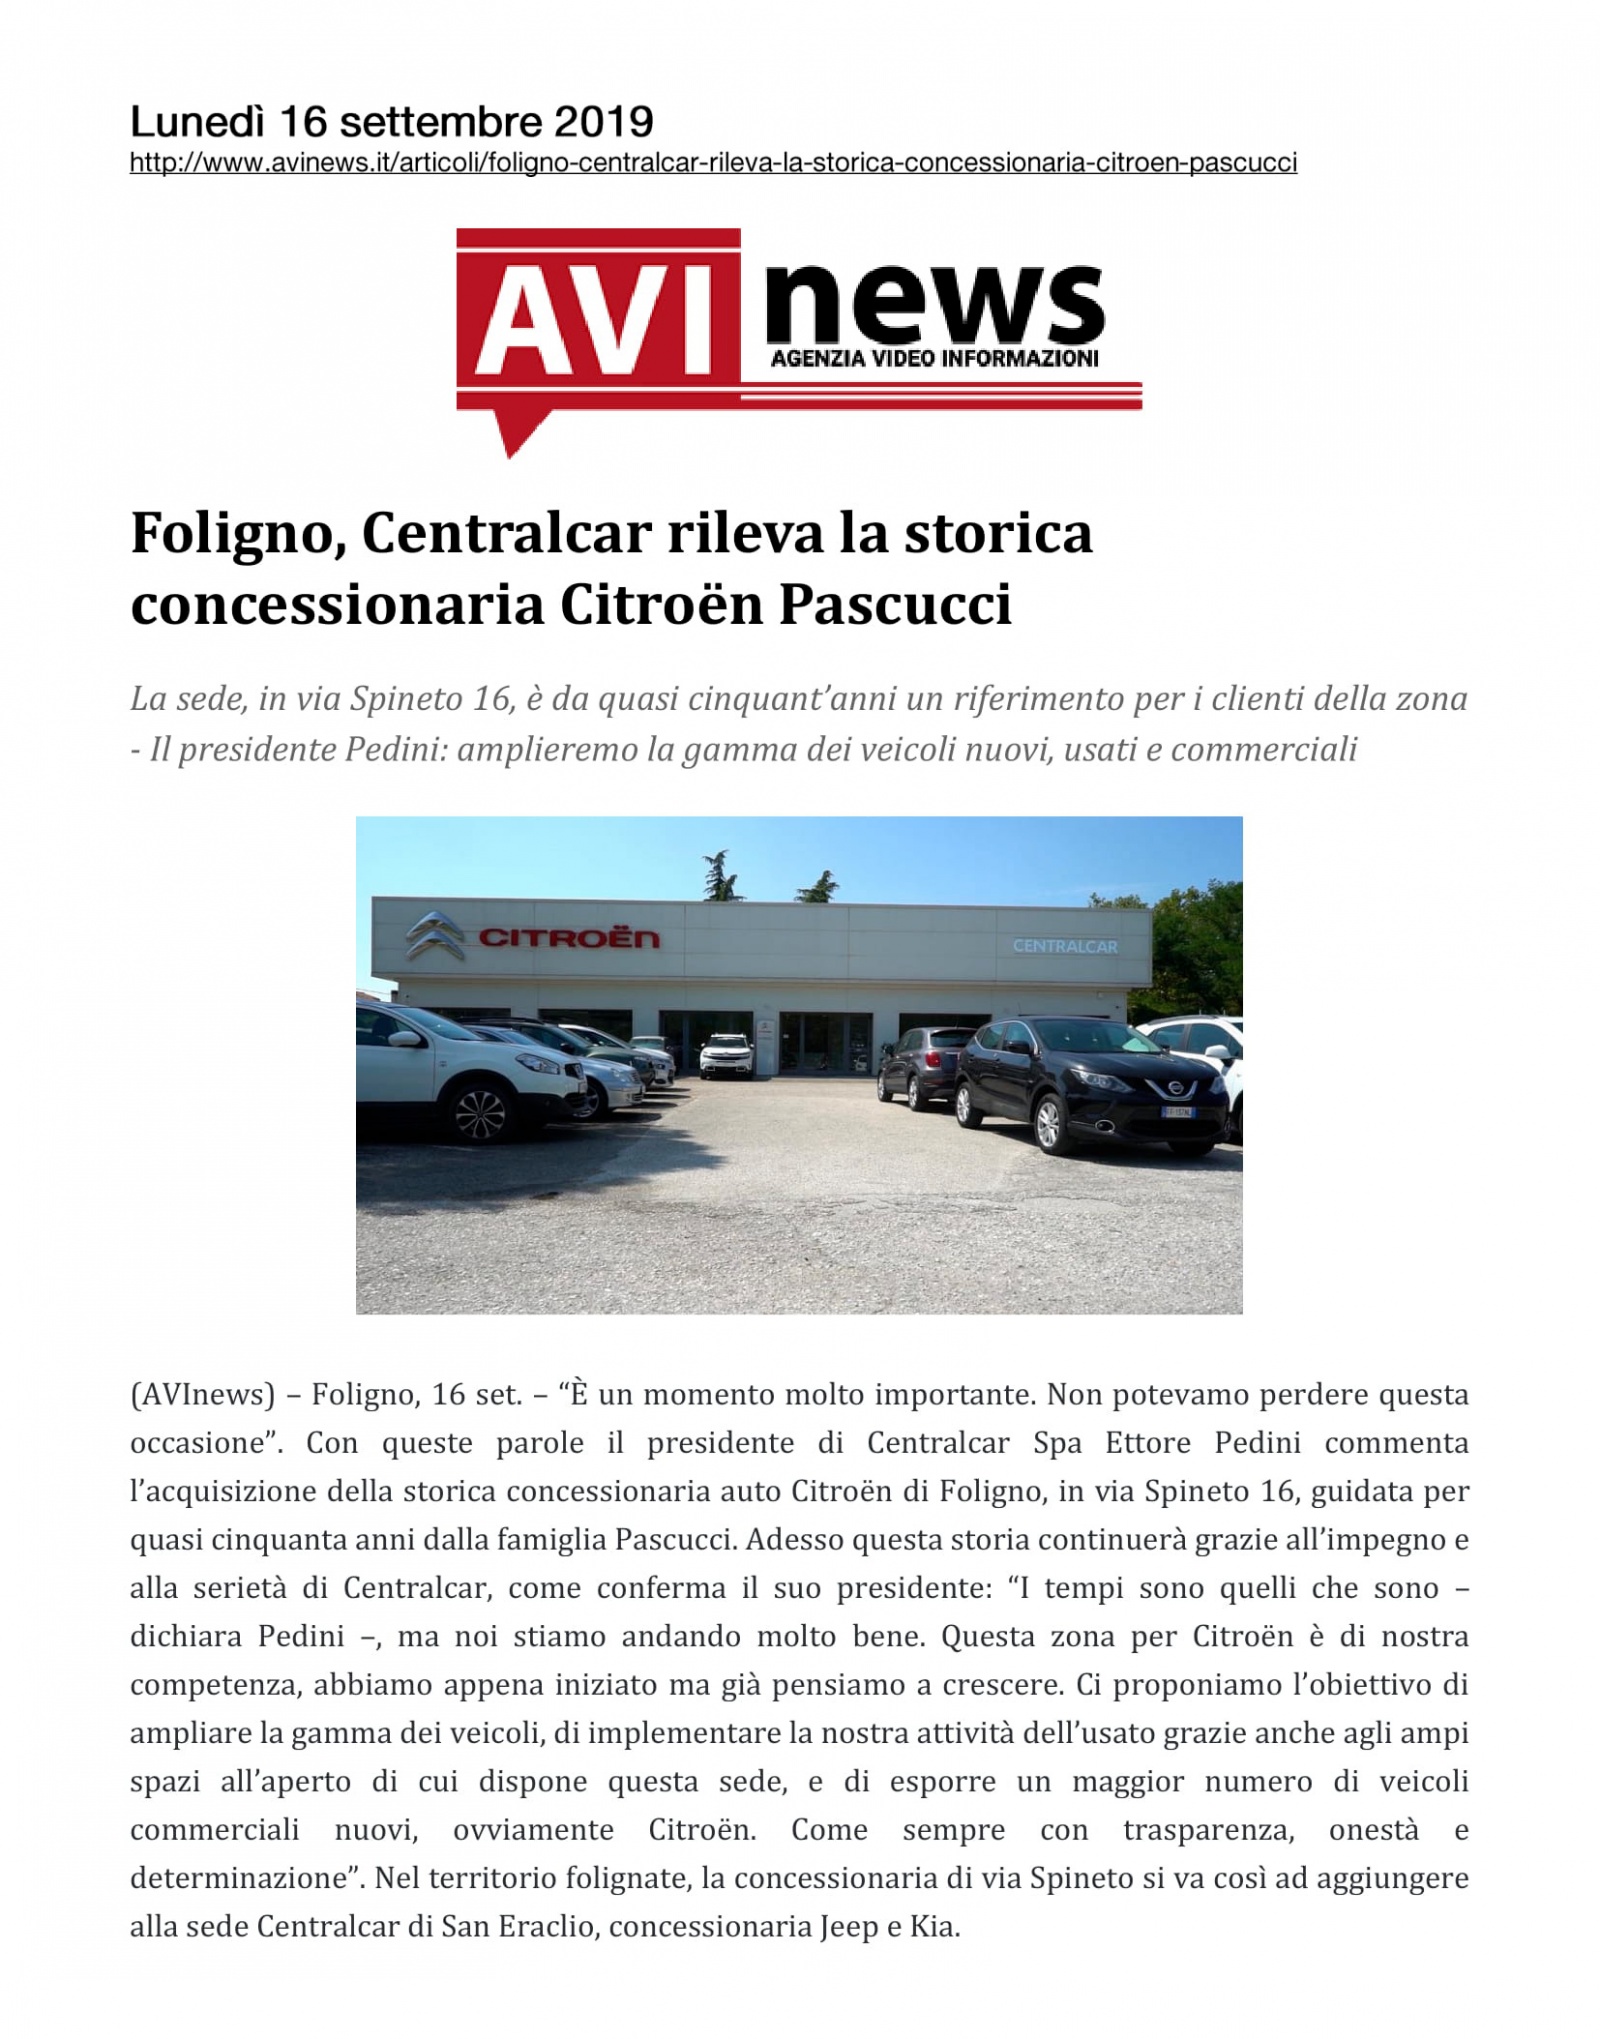 Foligno, Centralcar rileva la storica concessionaria Citroën Pascucci